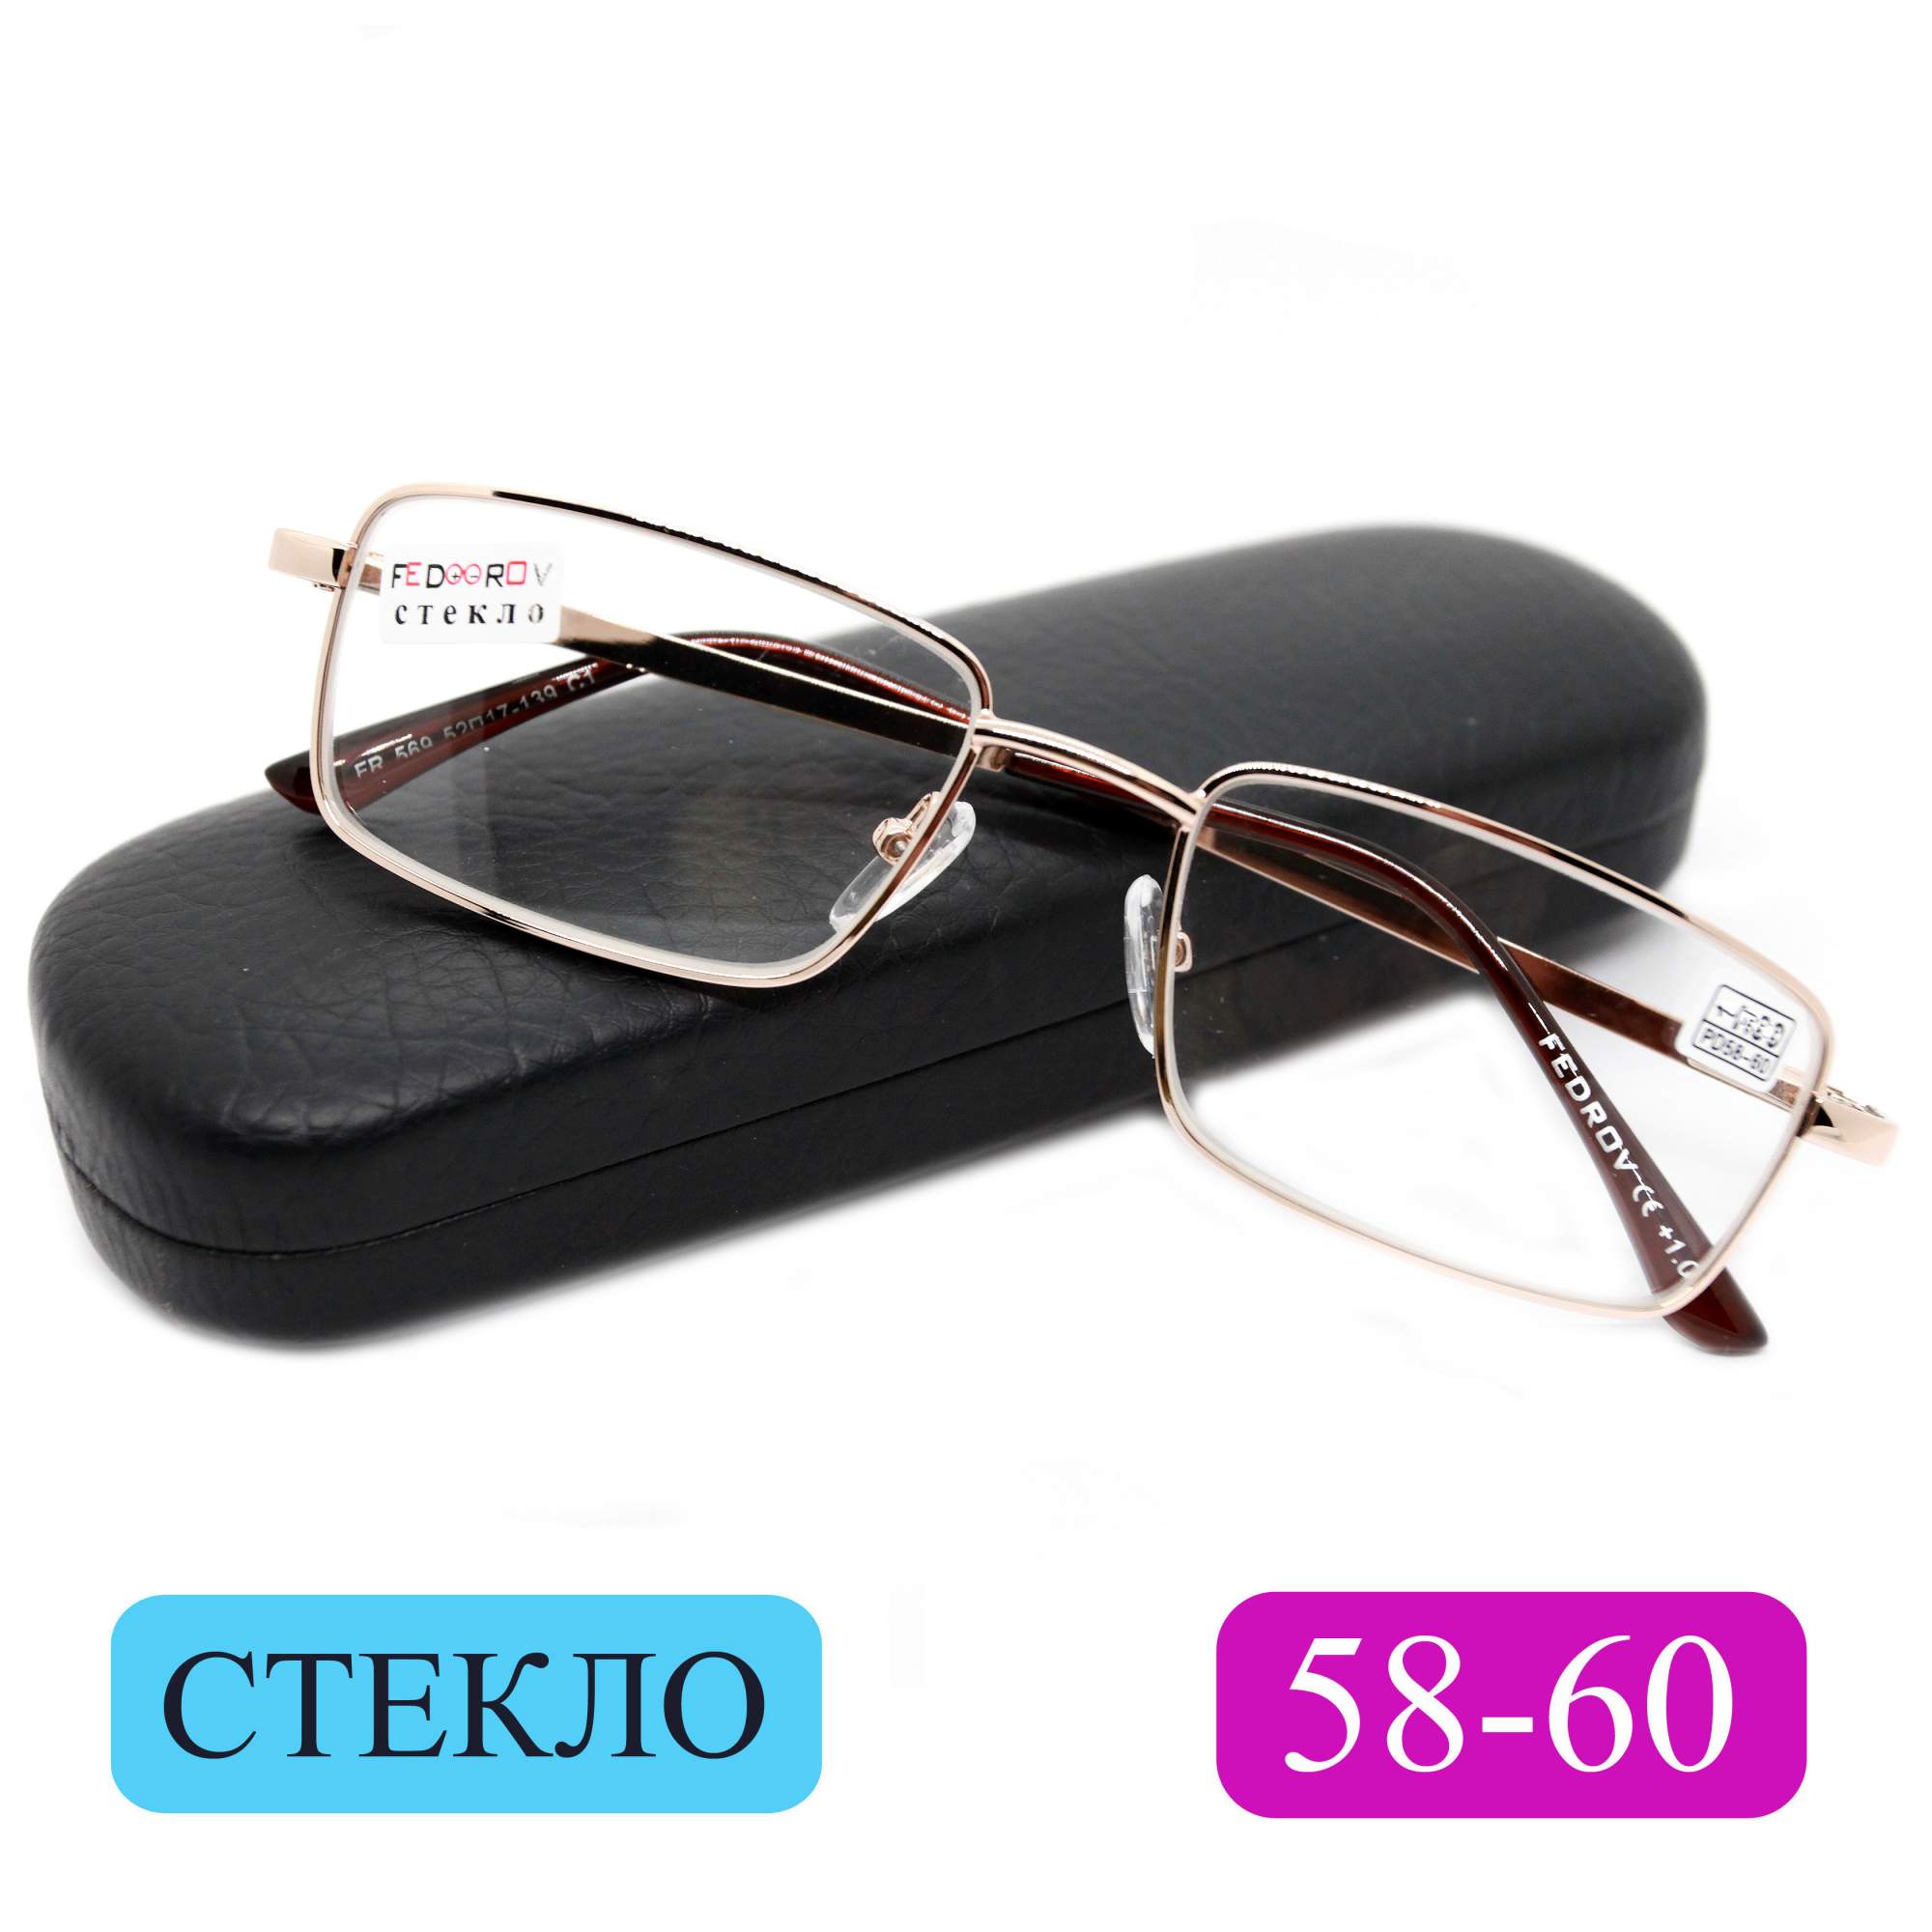 Готовые очки Fedrov 569, со стеклянной линзой, +2,75, c футляром, золотые, РЦ 58-60